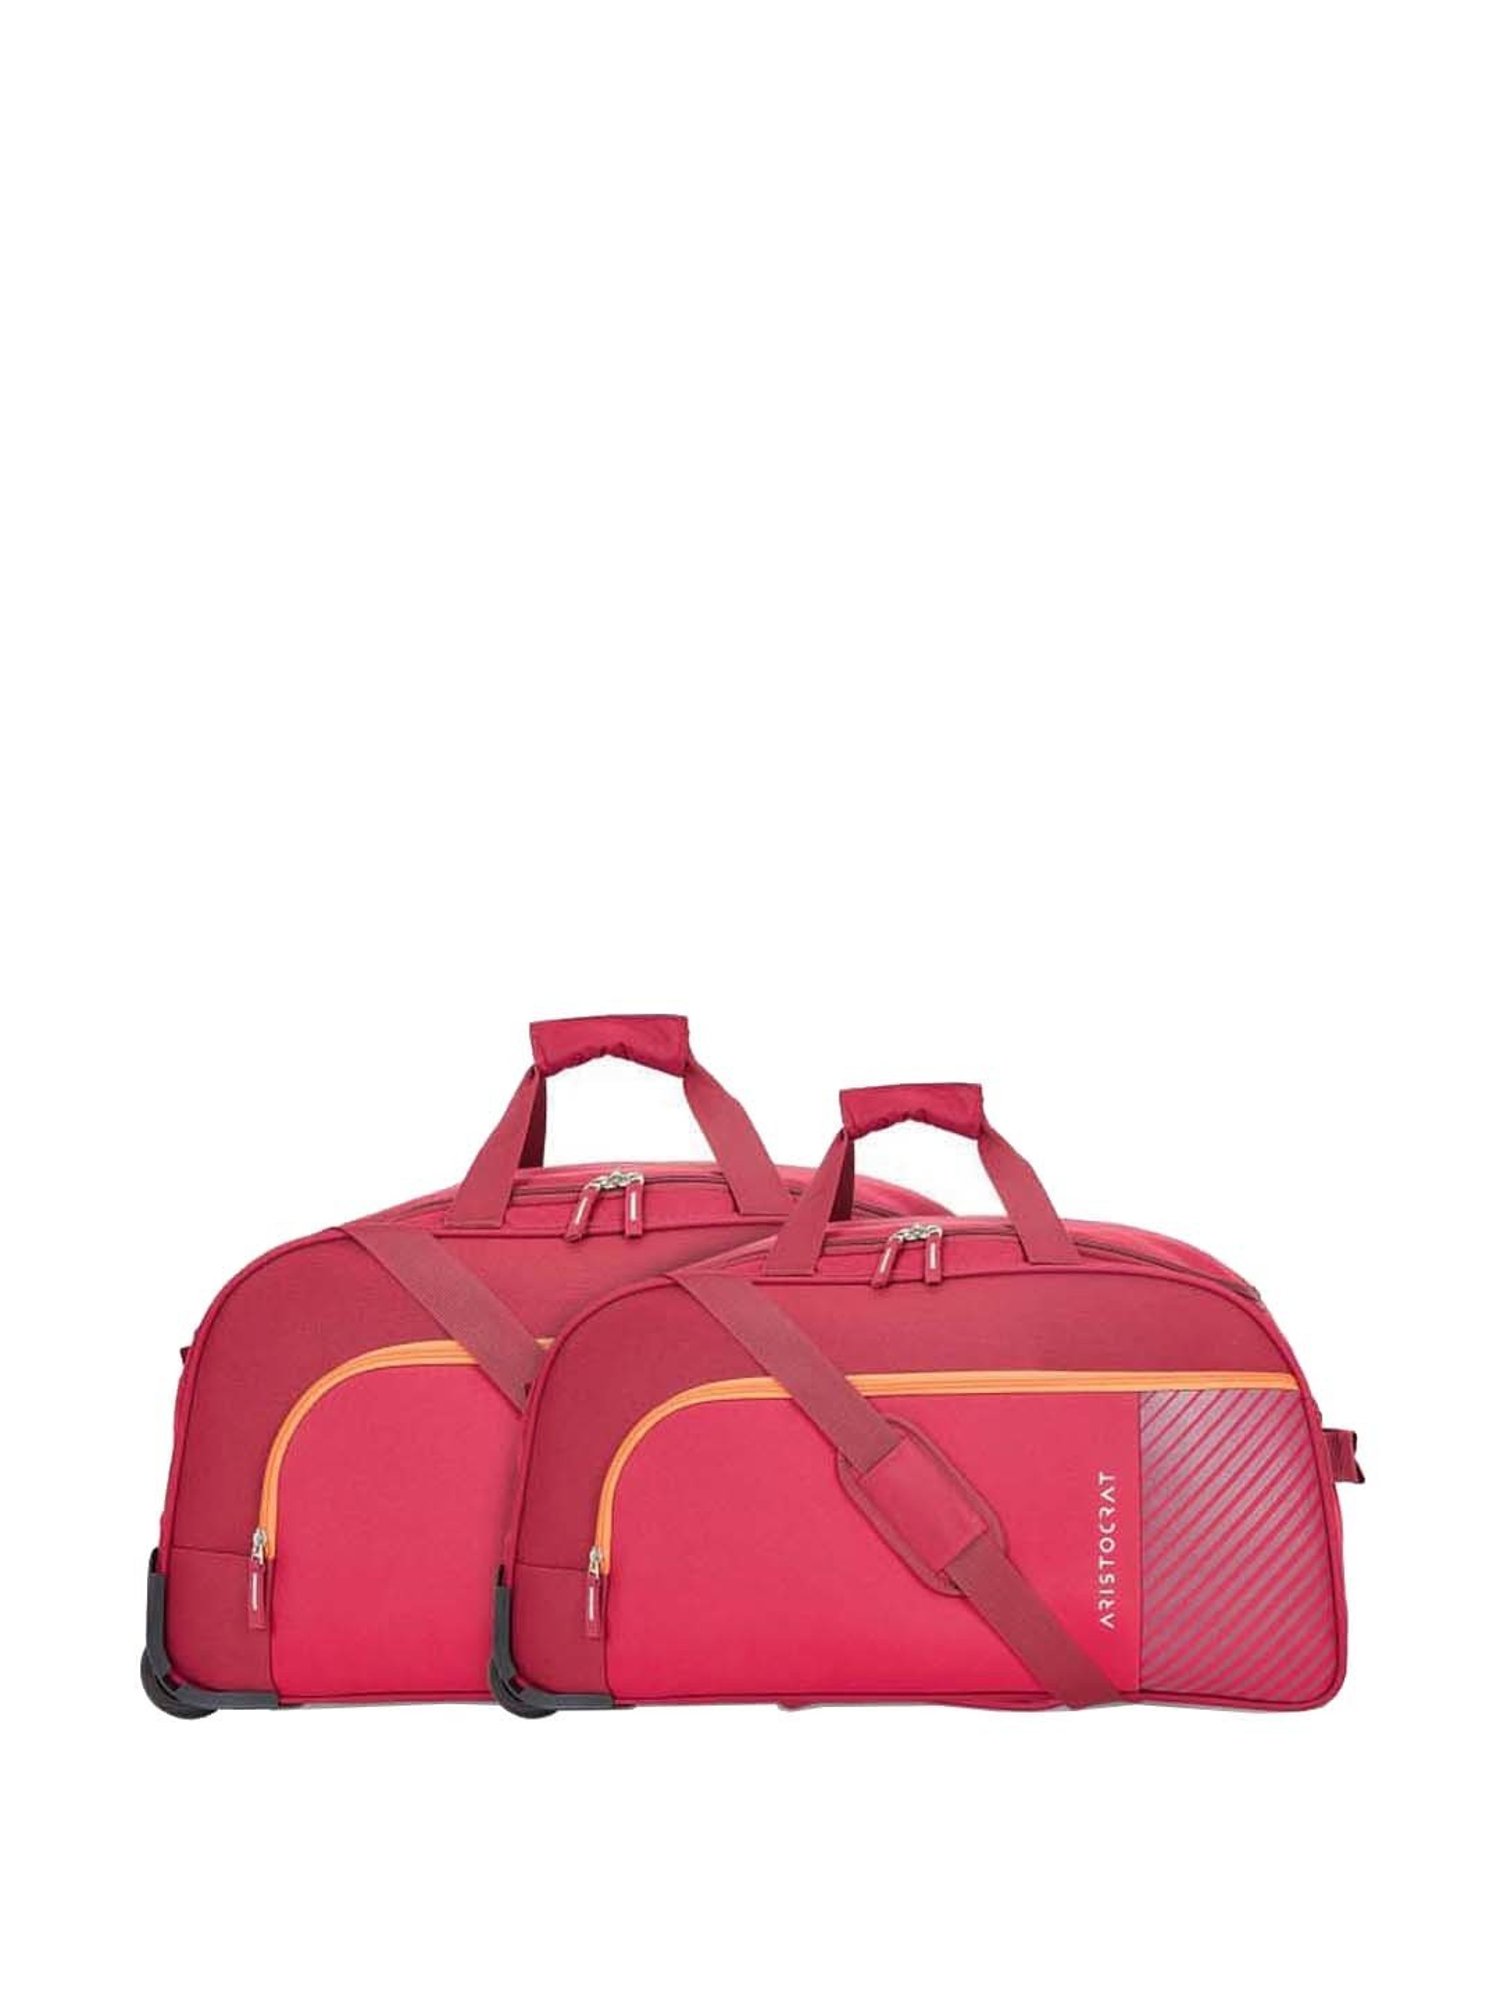 Safari Magunum Colt Suitcase Cabin Bag 55 Cm | Genx Bags Online